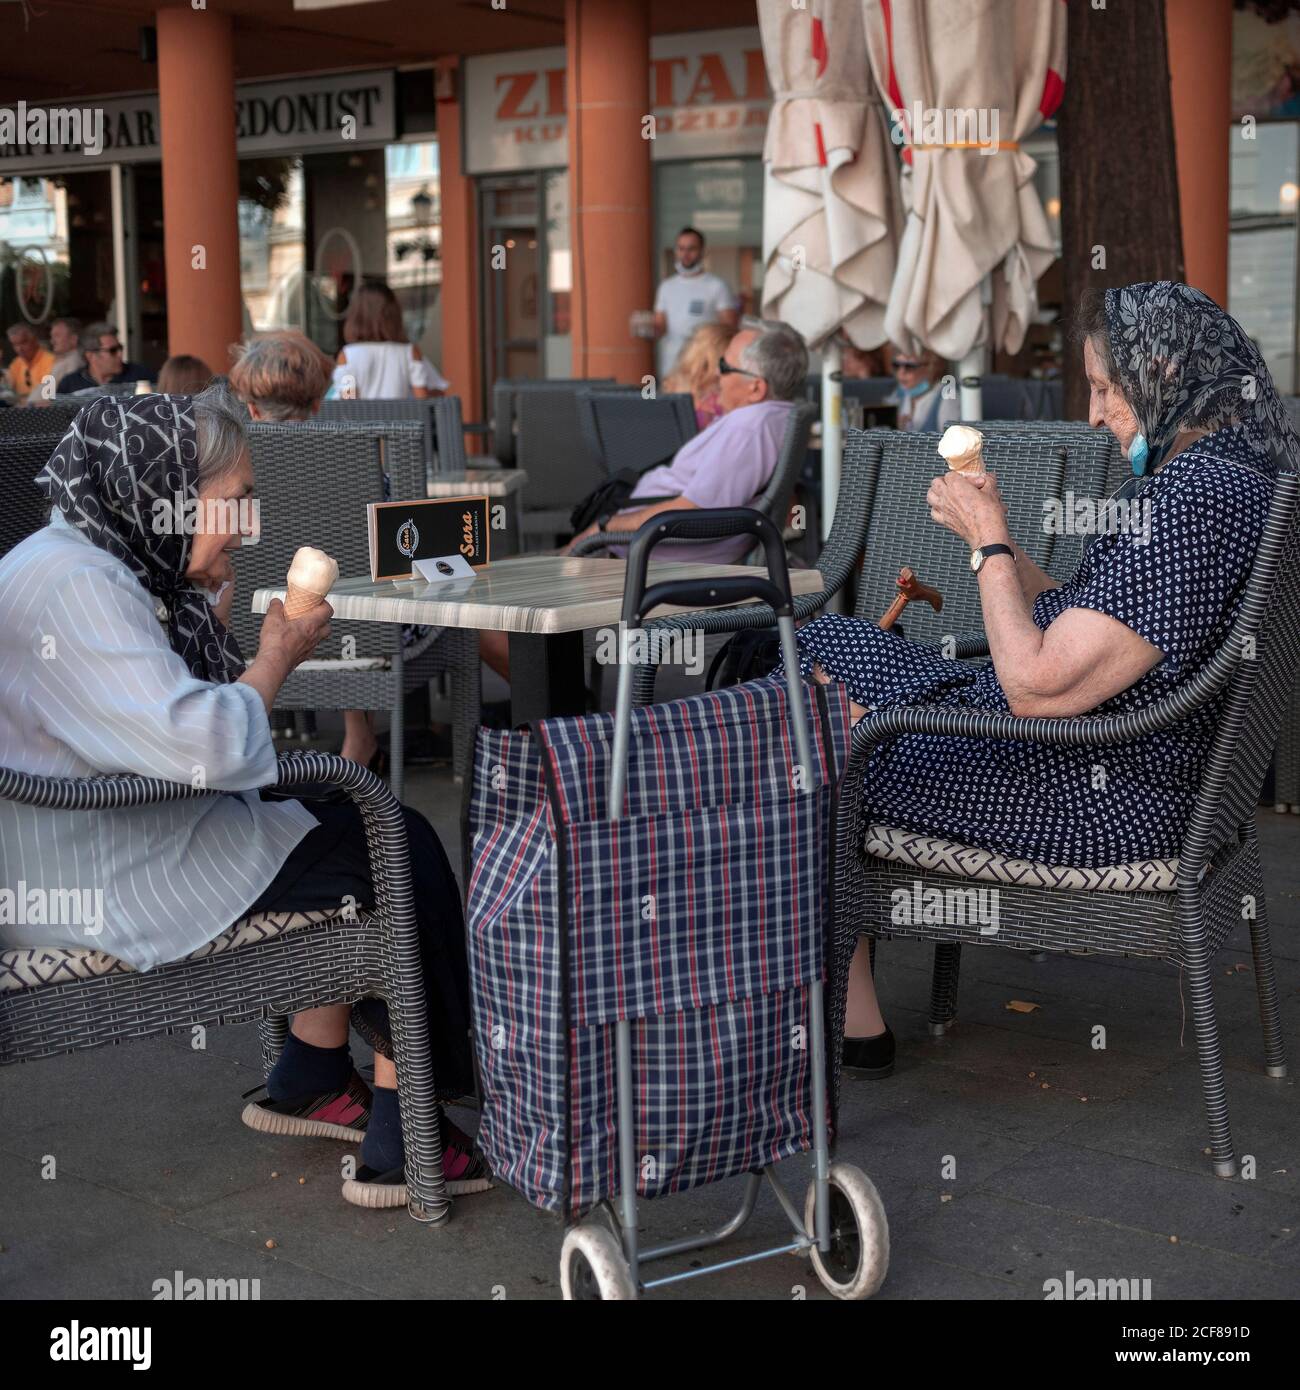 Belgrad, Serbien, 31. Aug 2020: Zwei Frauen sitzen in einem Café und essen Eis Stockfoto